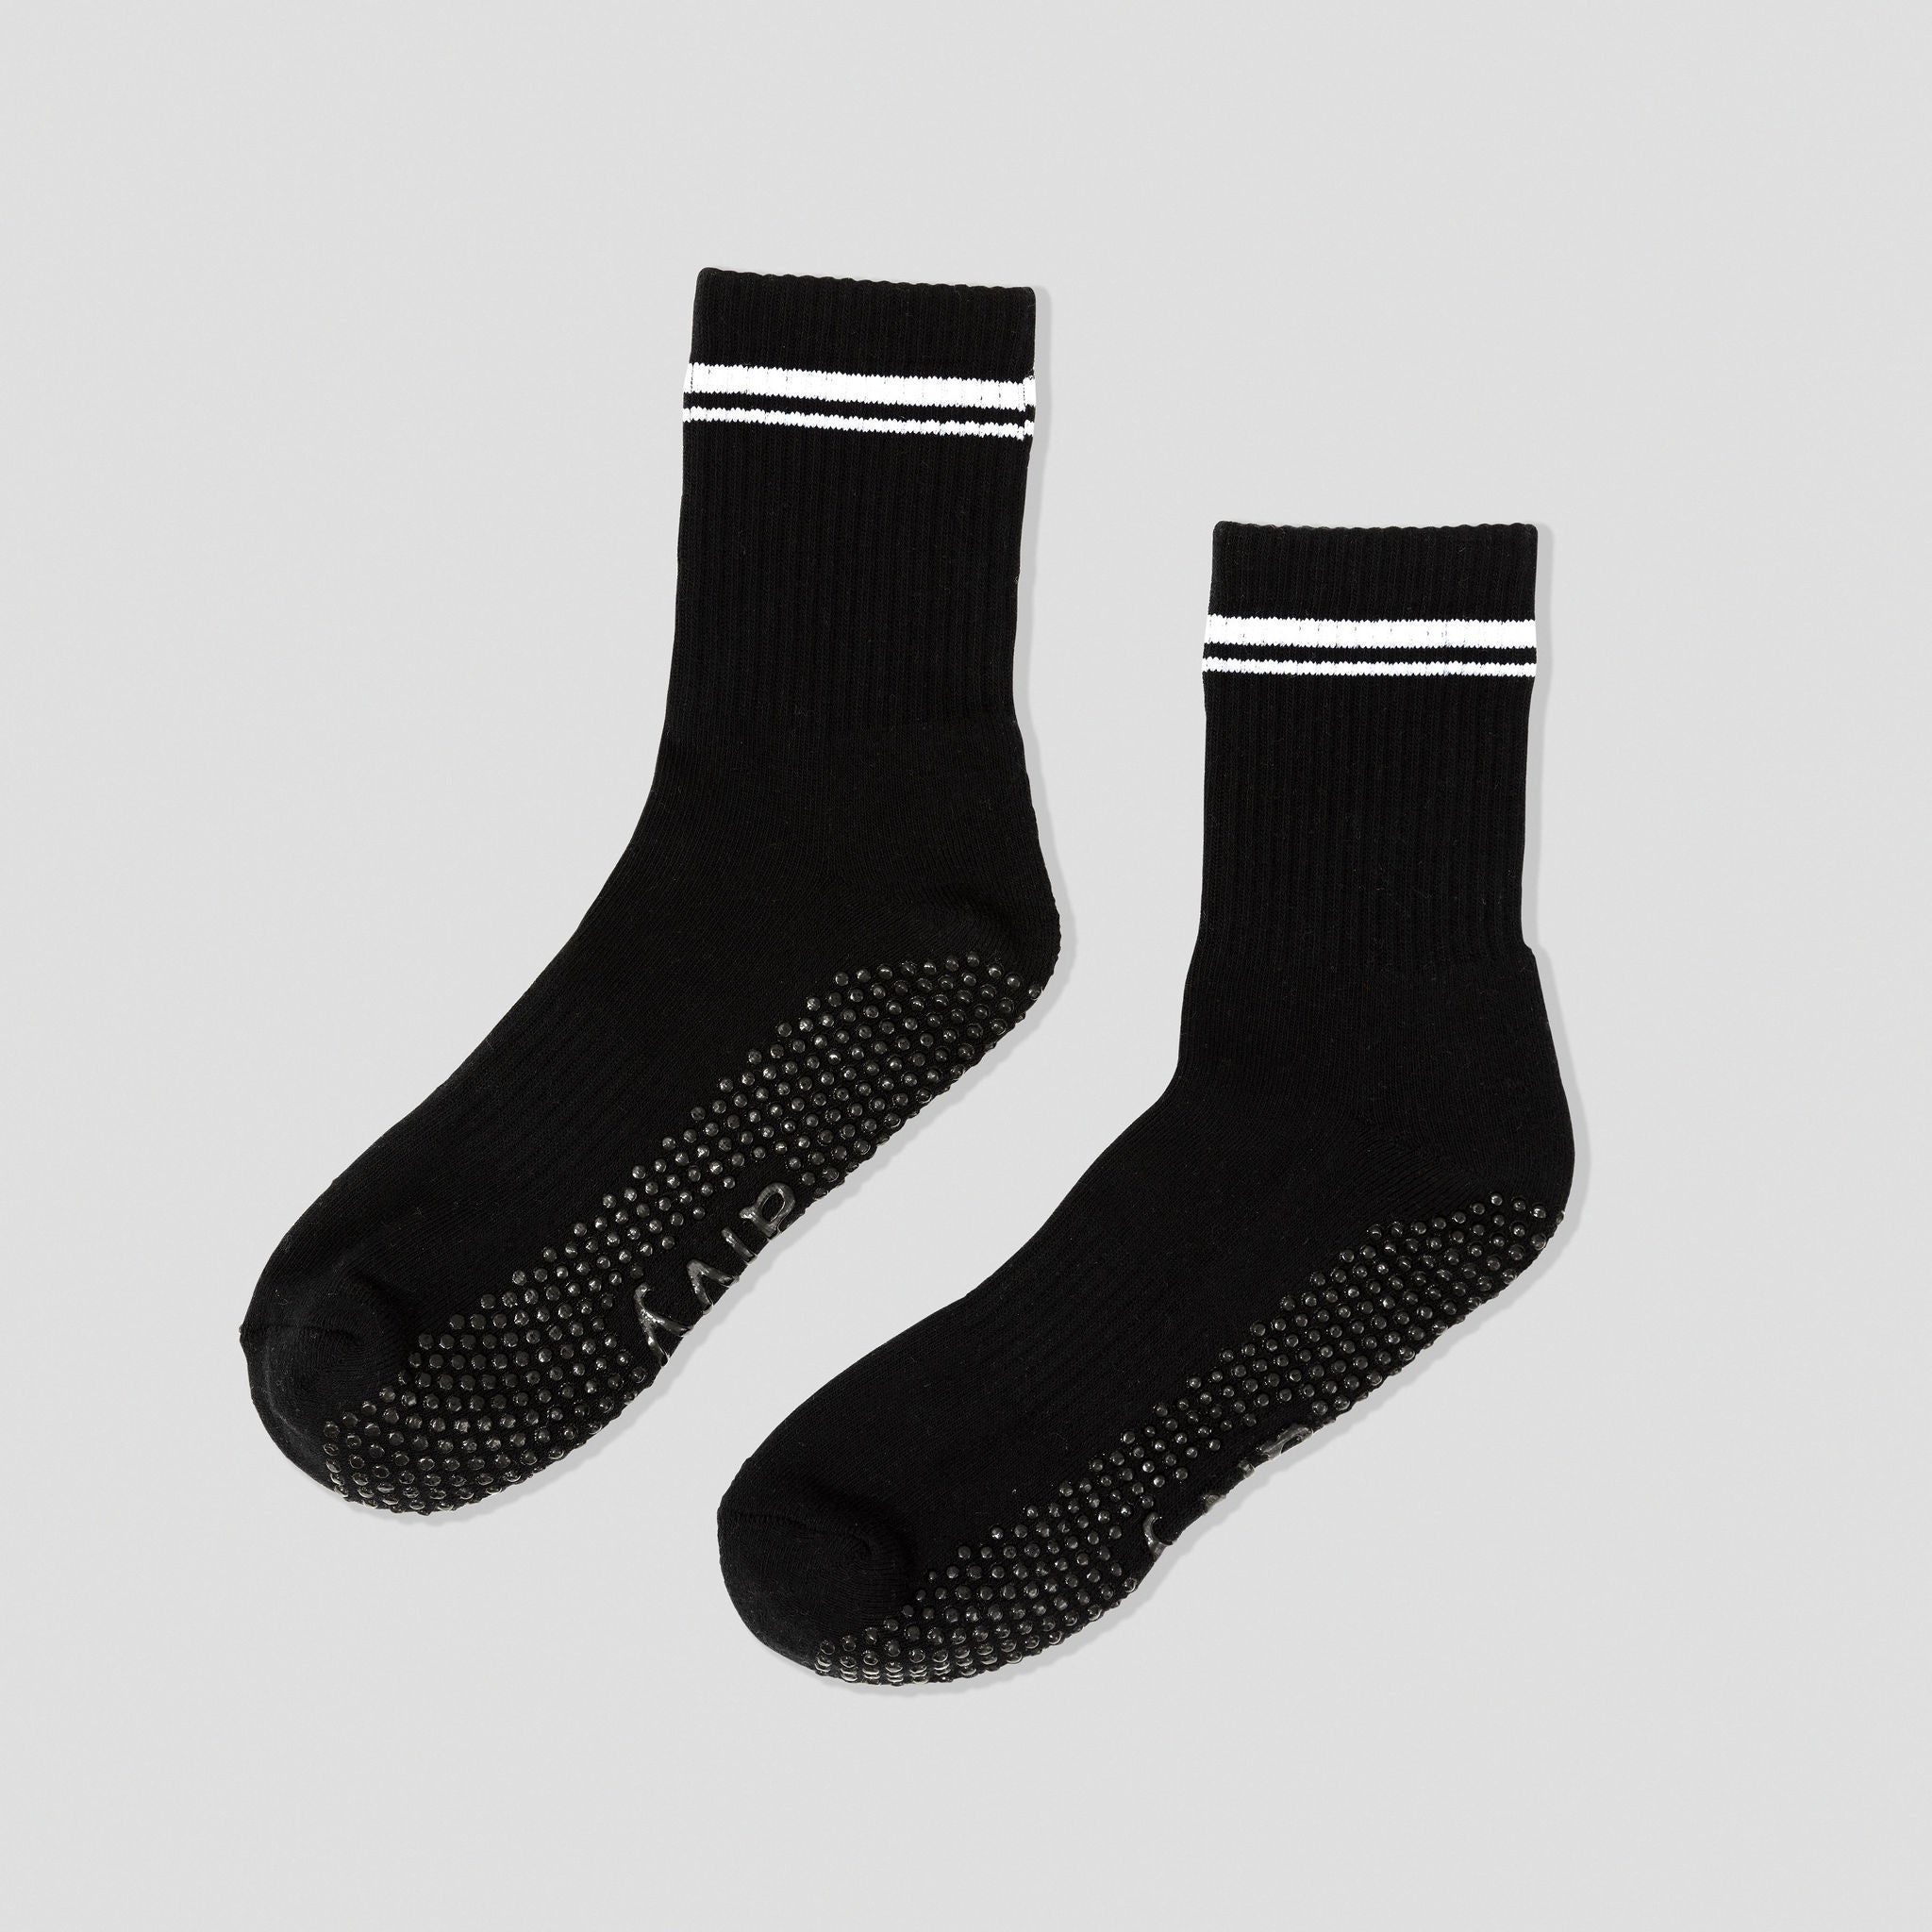 Alvy midnight black grip socks